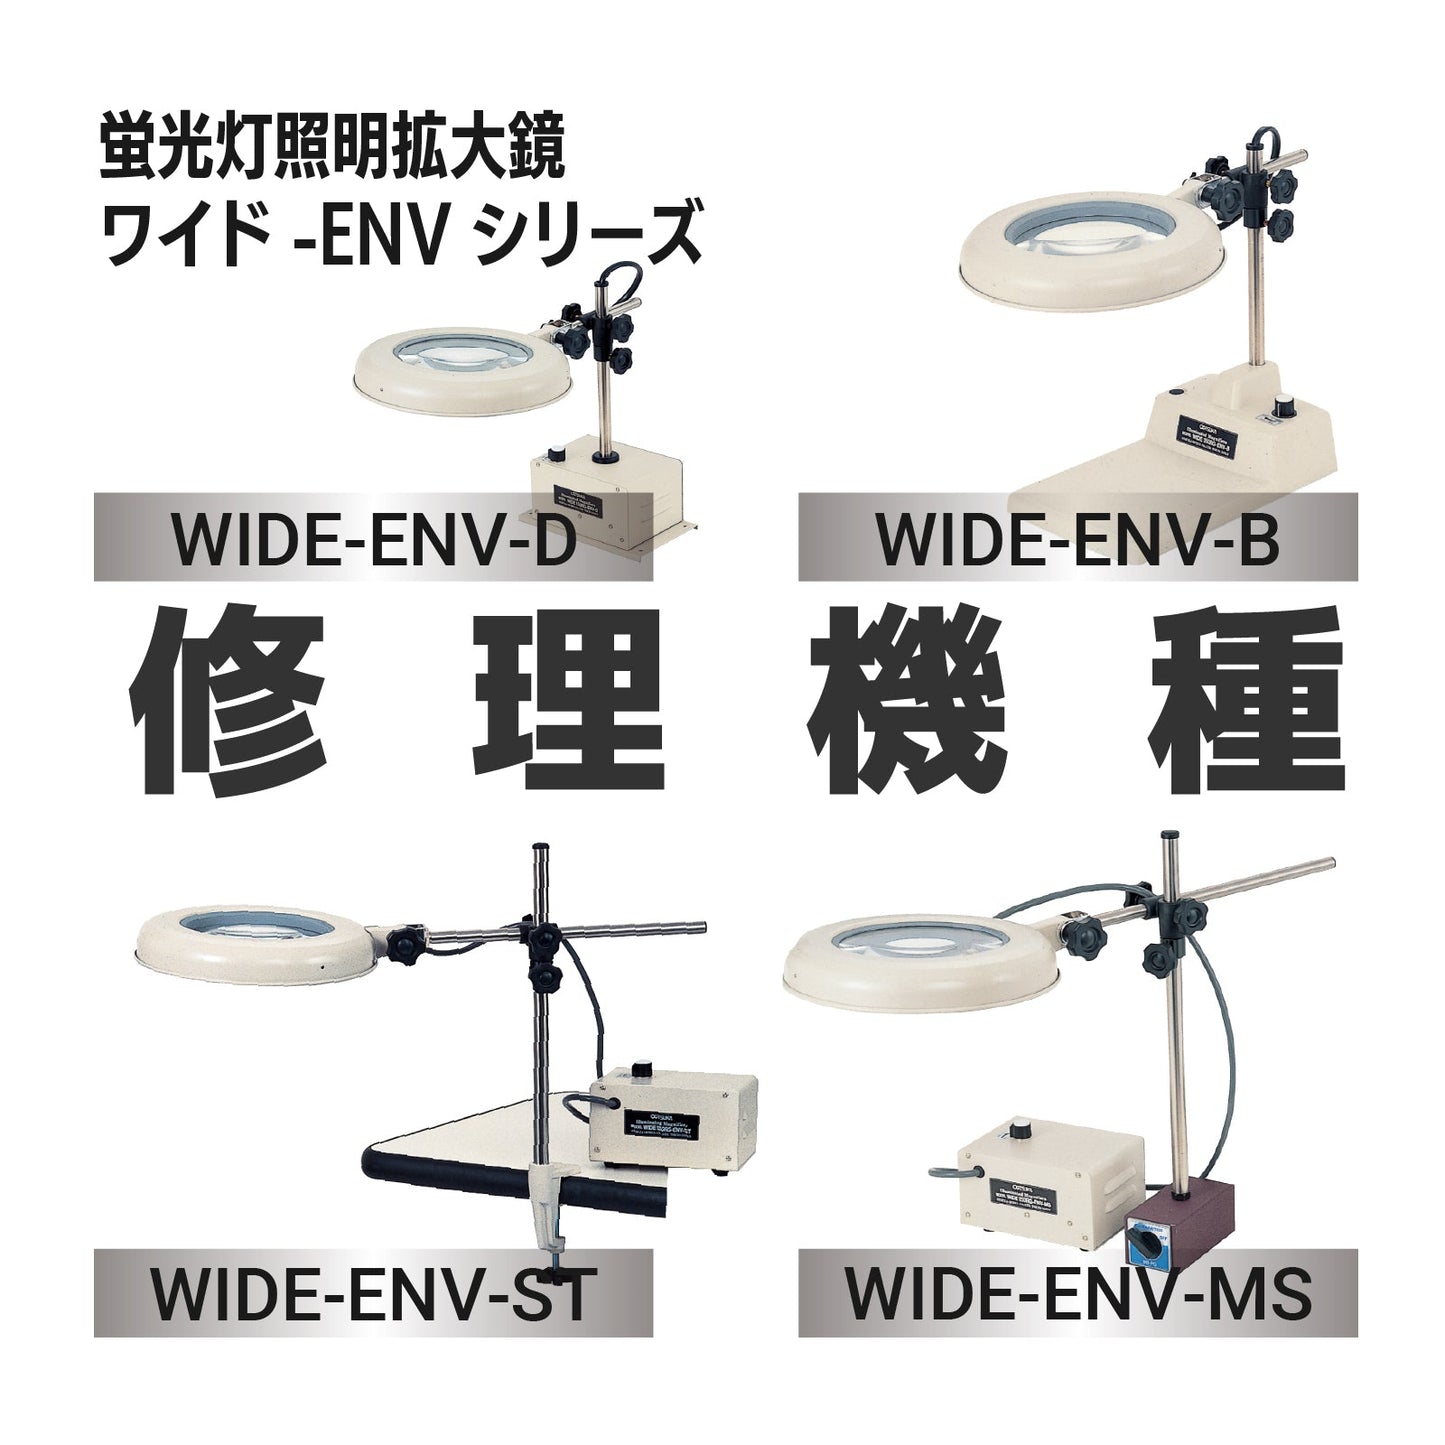 ワイド-ENVシリーズ： ワイド‐ENV-B,D,MS,ST